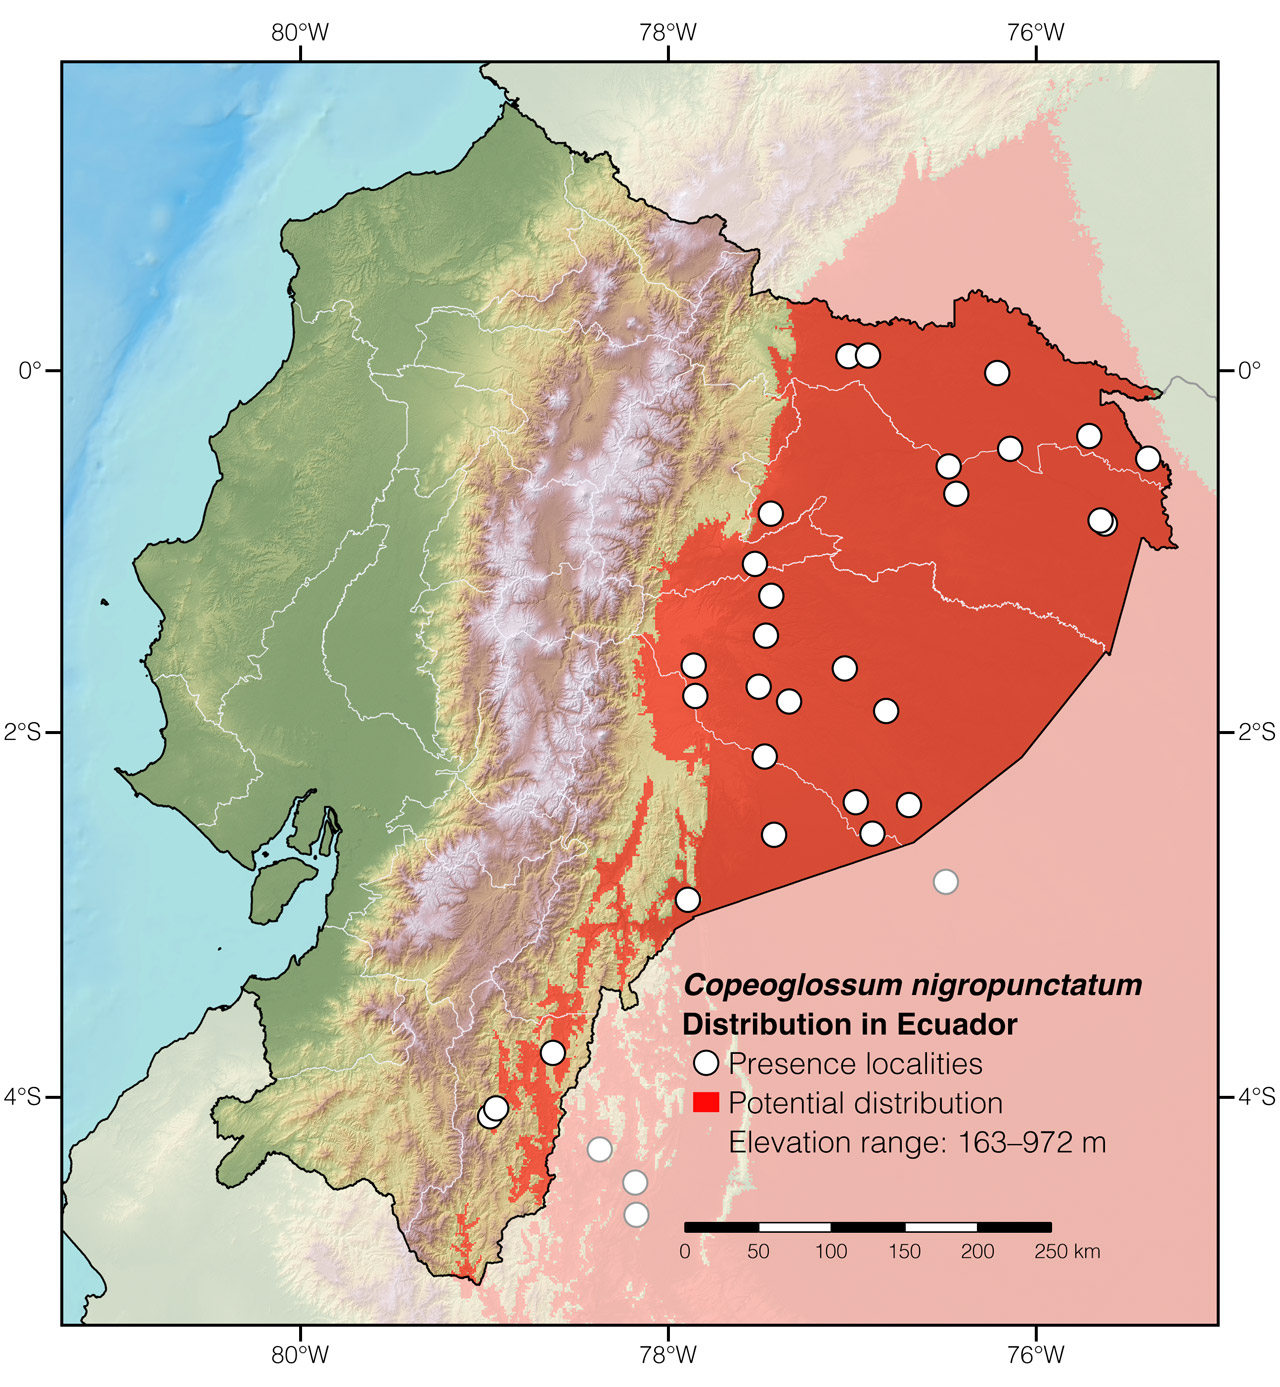 Distribution of Copeoglossum nigropunctatum in Ecuador